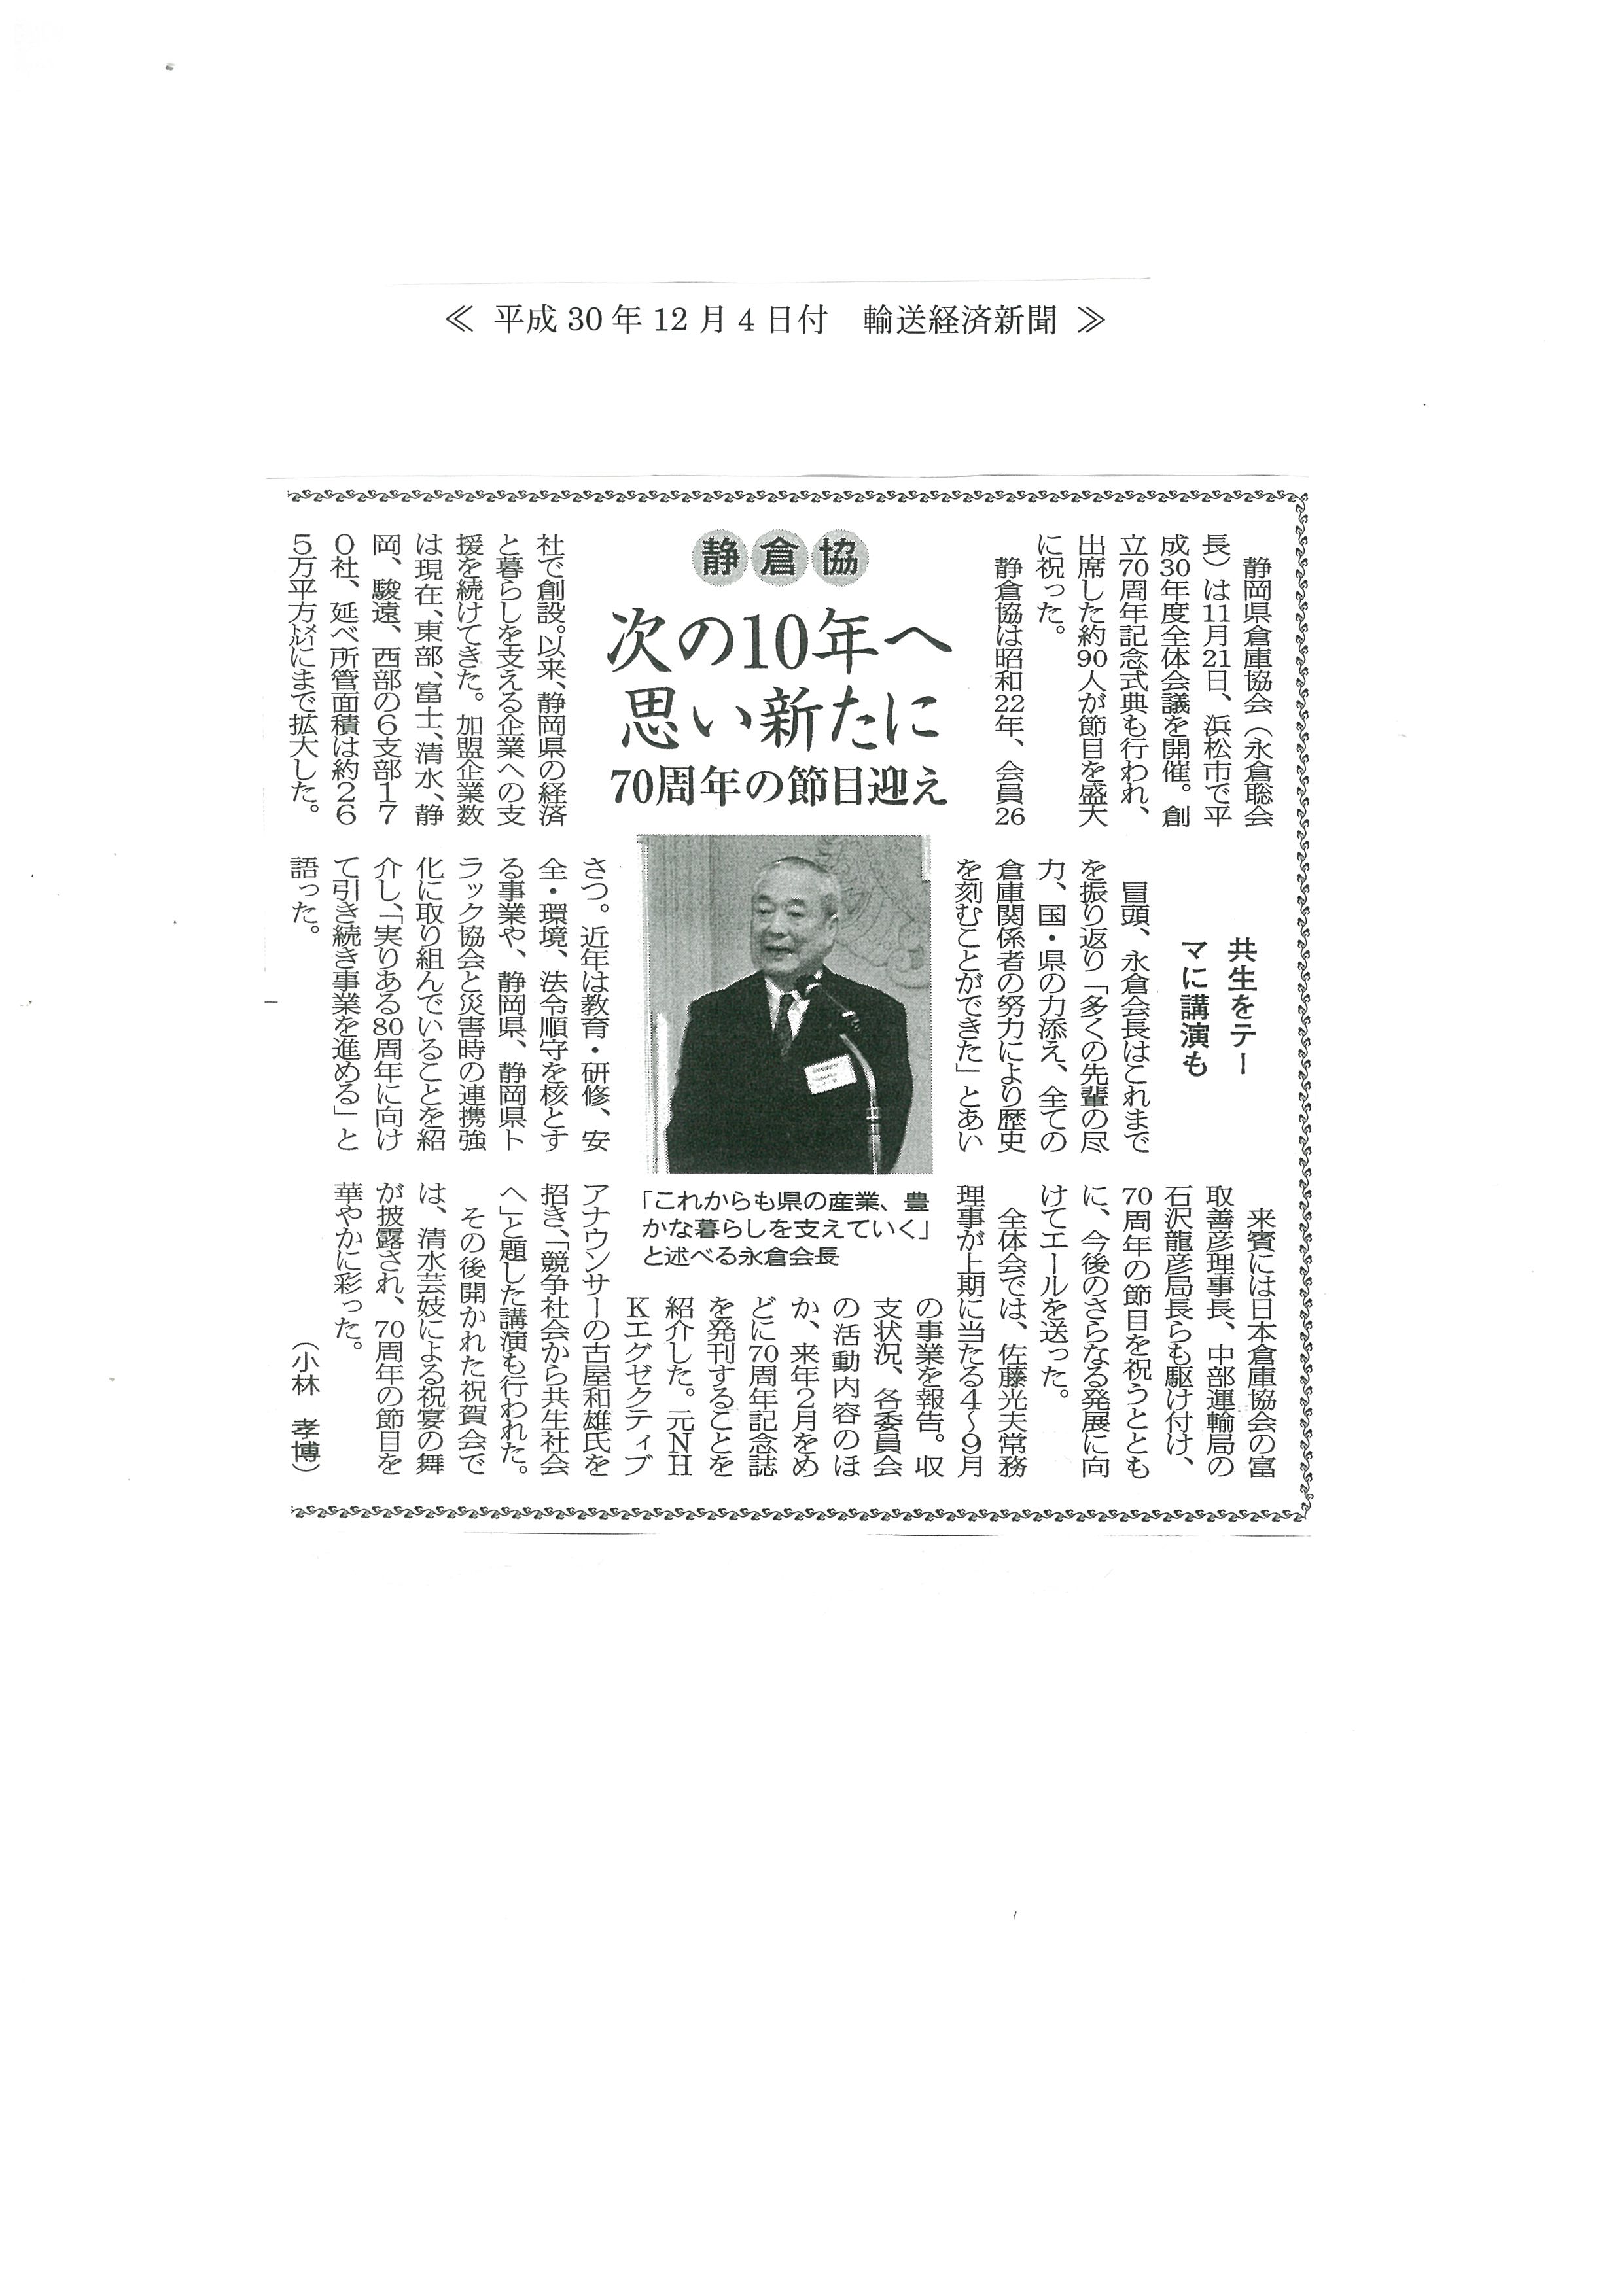 輸送経済新聞　静岡県倉庫協会平成30年度全体会議・創立70周年記念式典を開催